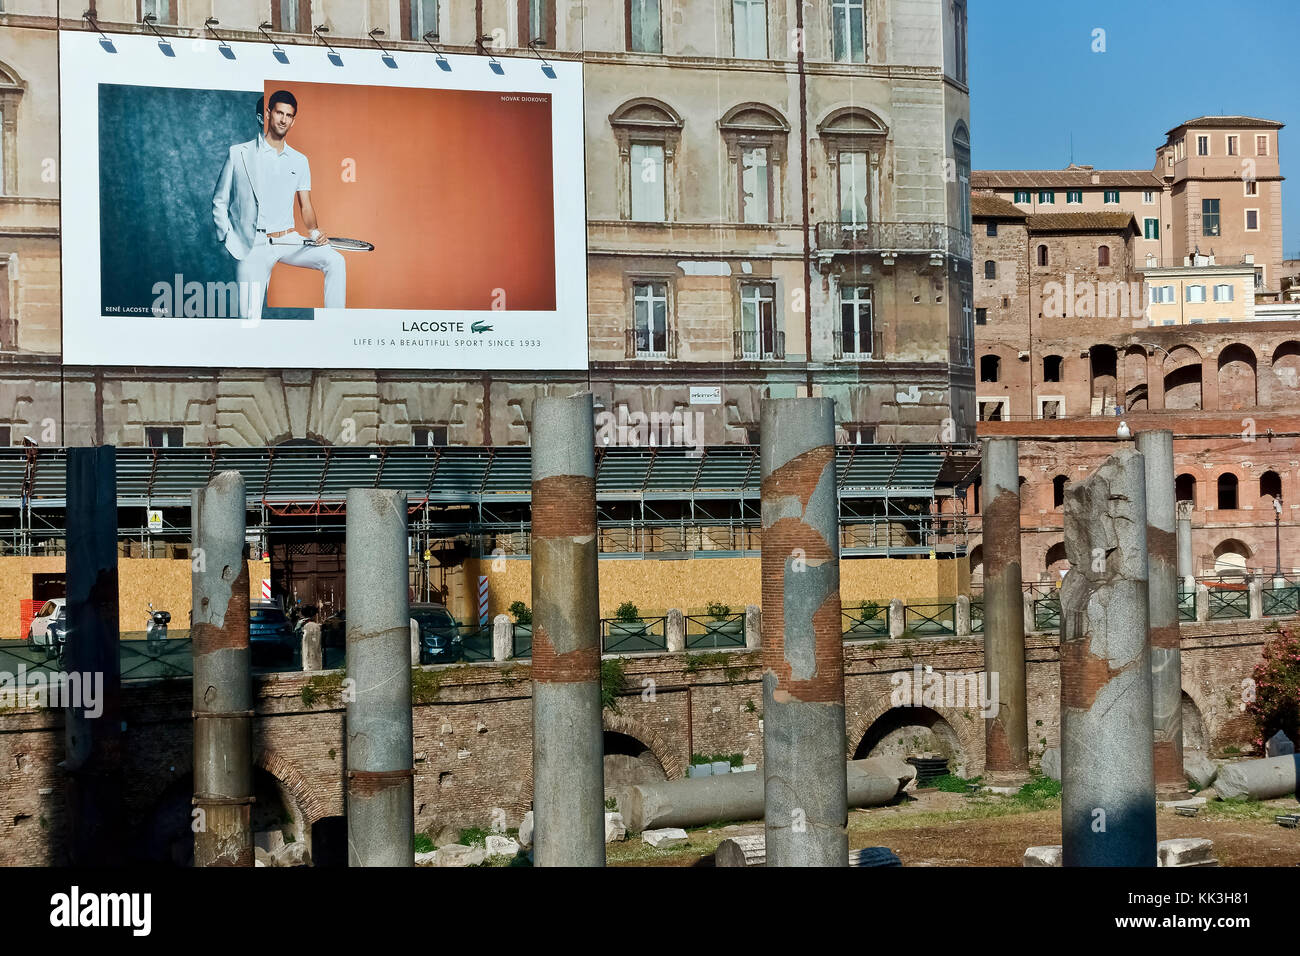 Lacoste Werbung Anschlagtafel auf ein Gebäude Gerüst während der Restaurierungsarbeiten an der Trajan Markt Forum. Rom, Italien. Neue und alte Gegensatz Konzept. Stockfoto